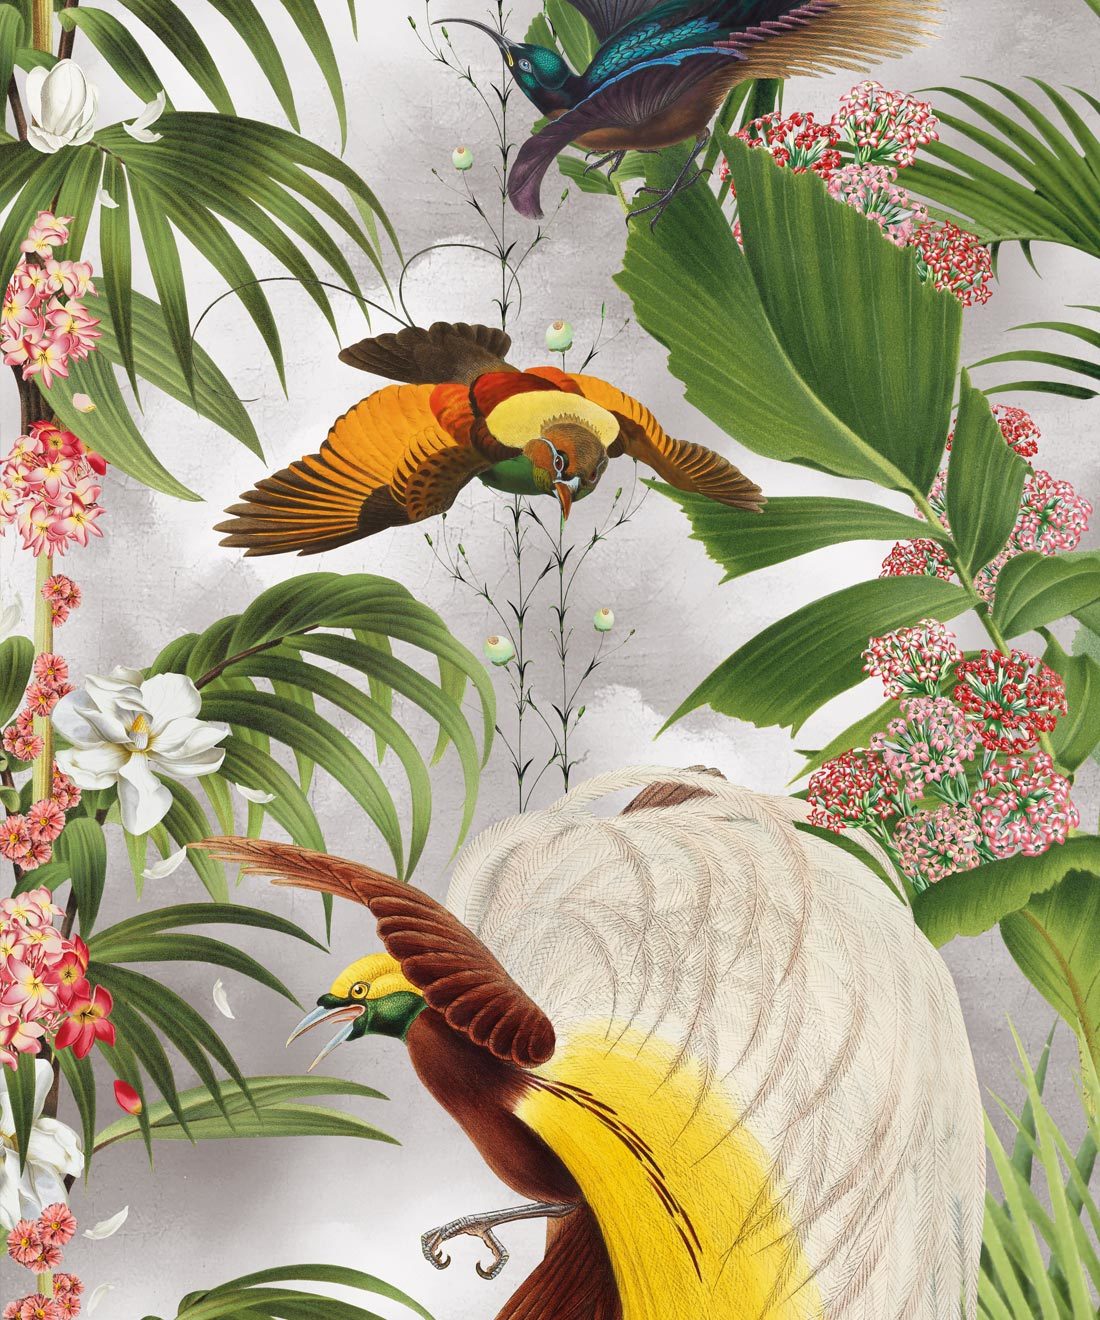 Paradiso Wallpaper - Tropische Botanical Wallpaper mit exotischen Vögeln und Palmen